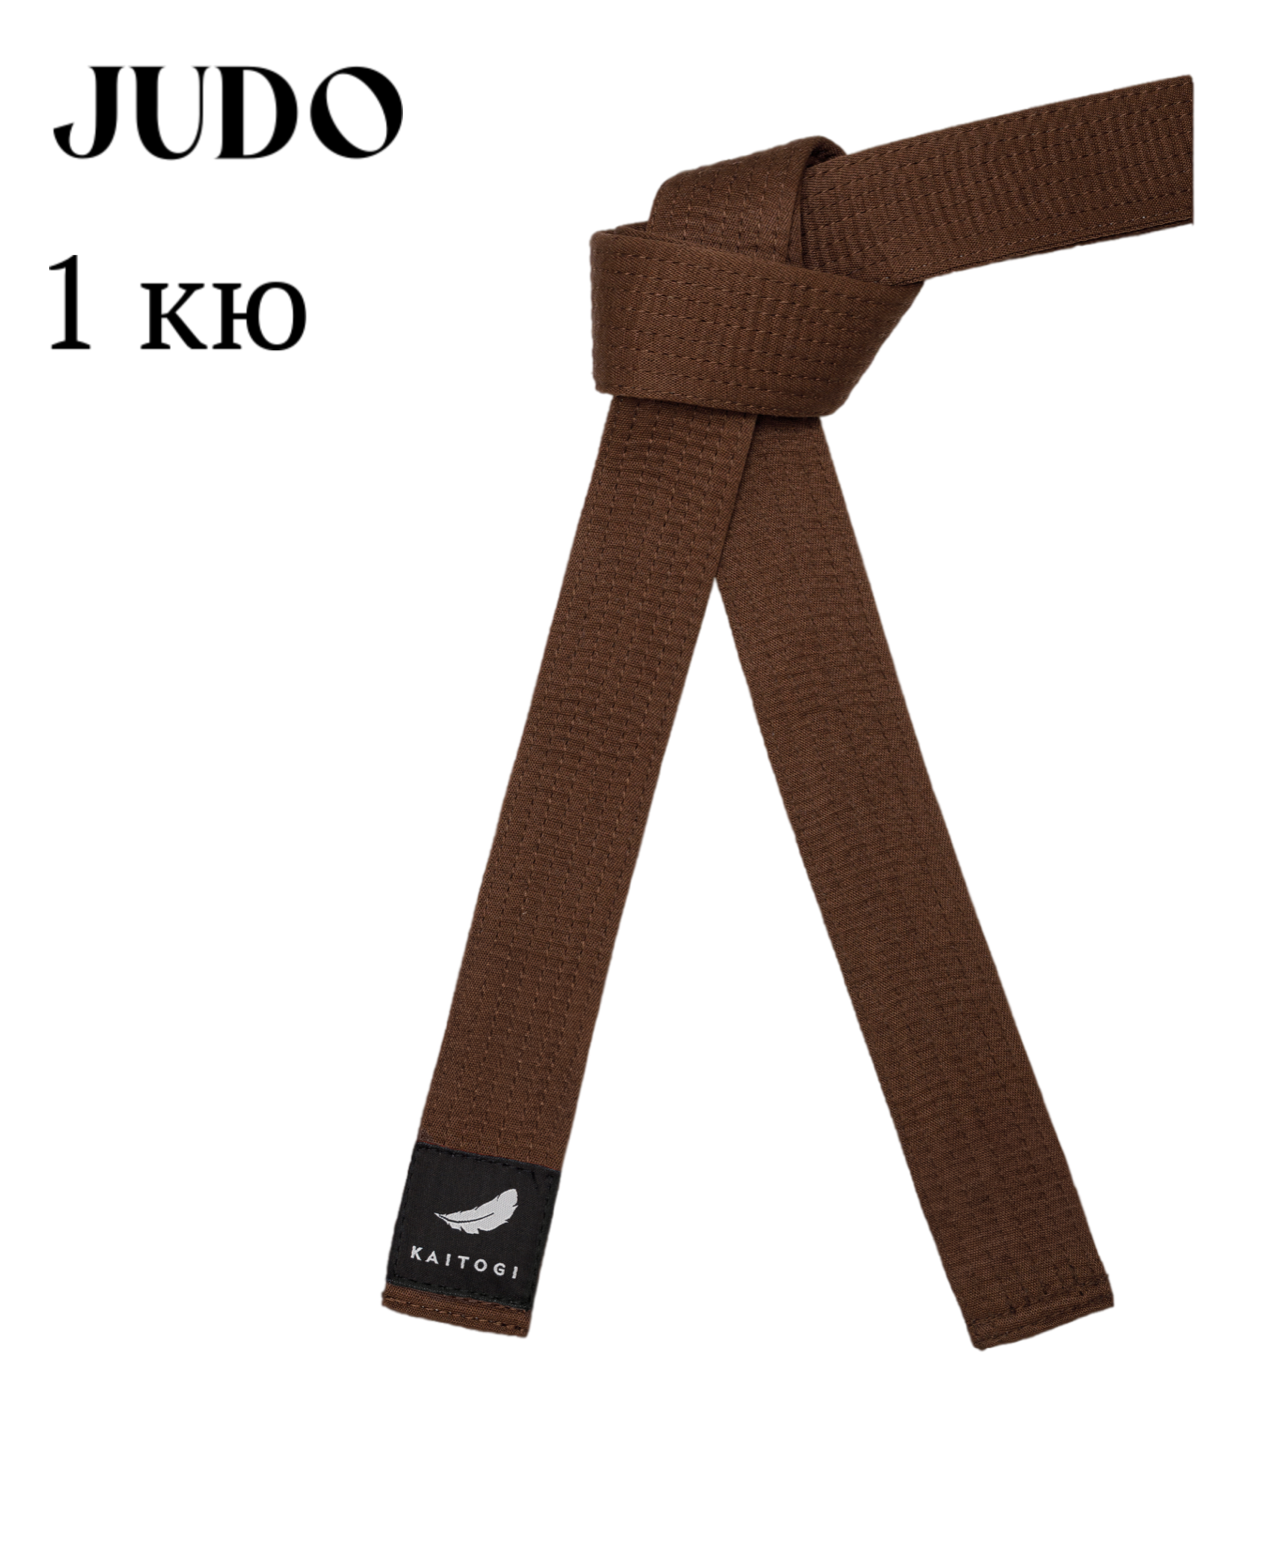 Пояс KAITOGI для дзюдо 1 кю коричневый 210 см